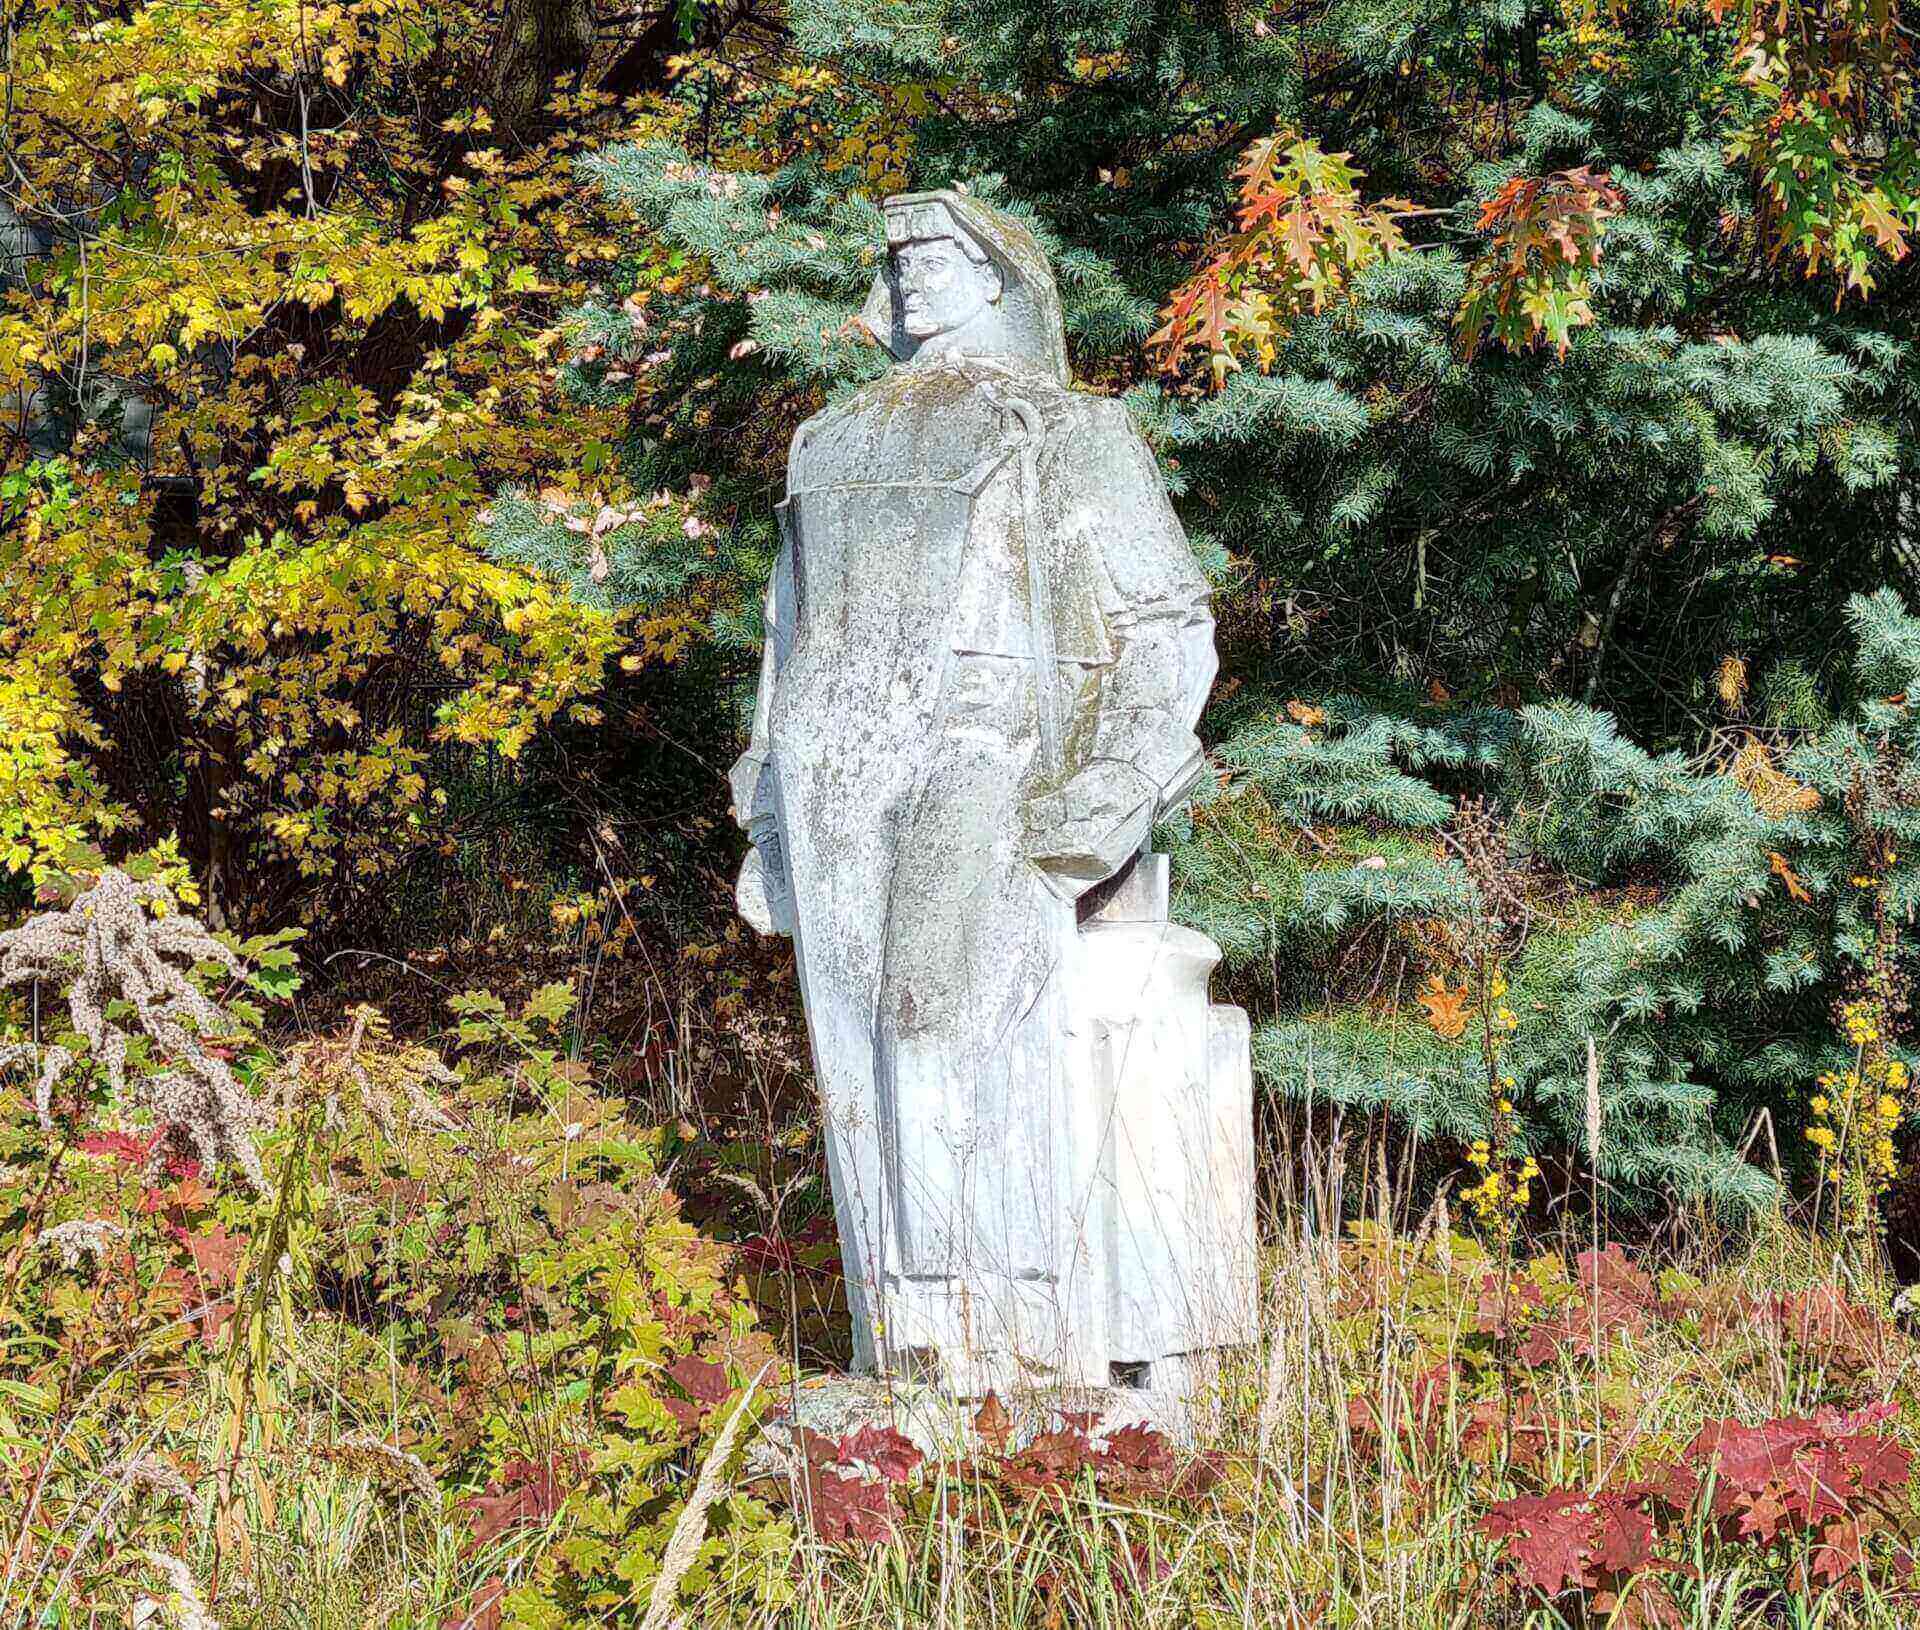 Rzeźba "Hutnik" w Parku Śląskim jesienią 2022